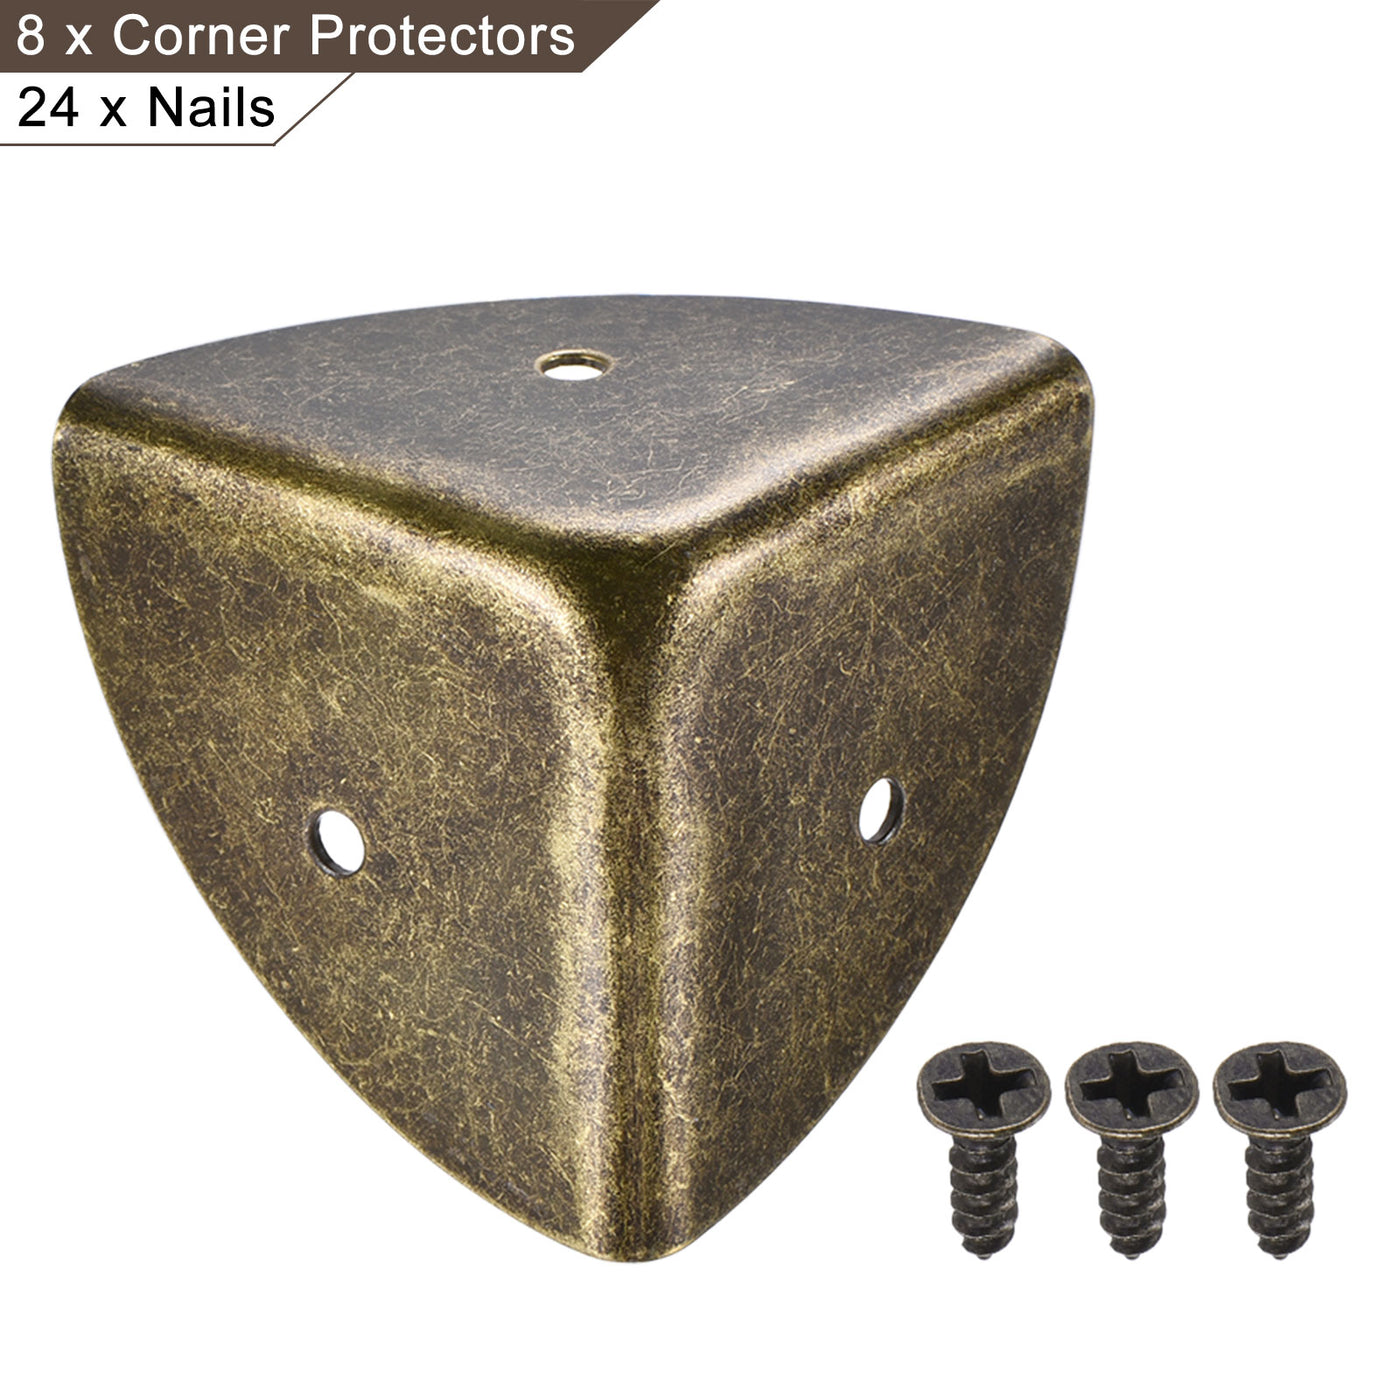 uxcell Uxcell 40x40x40mm Metal Box Corner Protectors Edge Guard Bronze Tone 8pcs